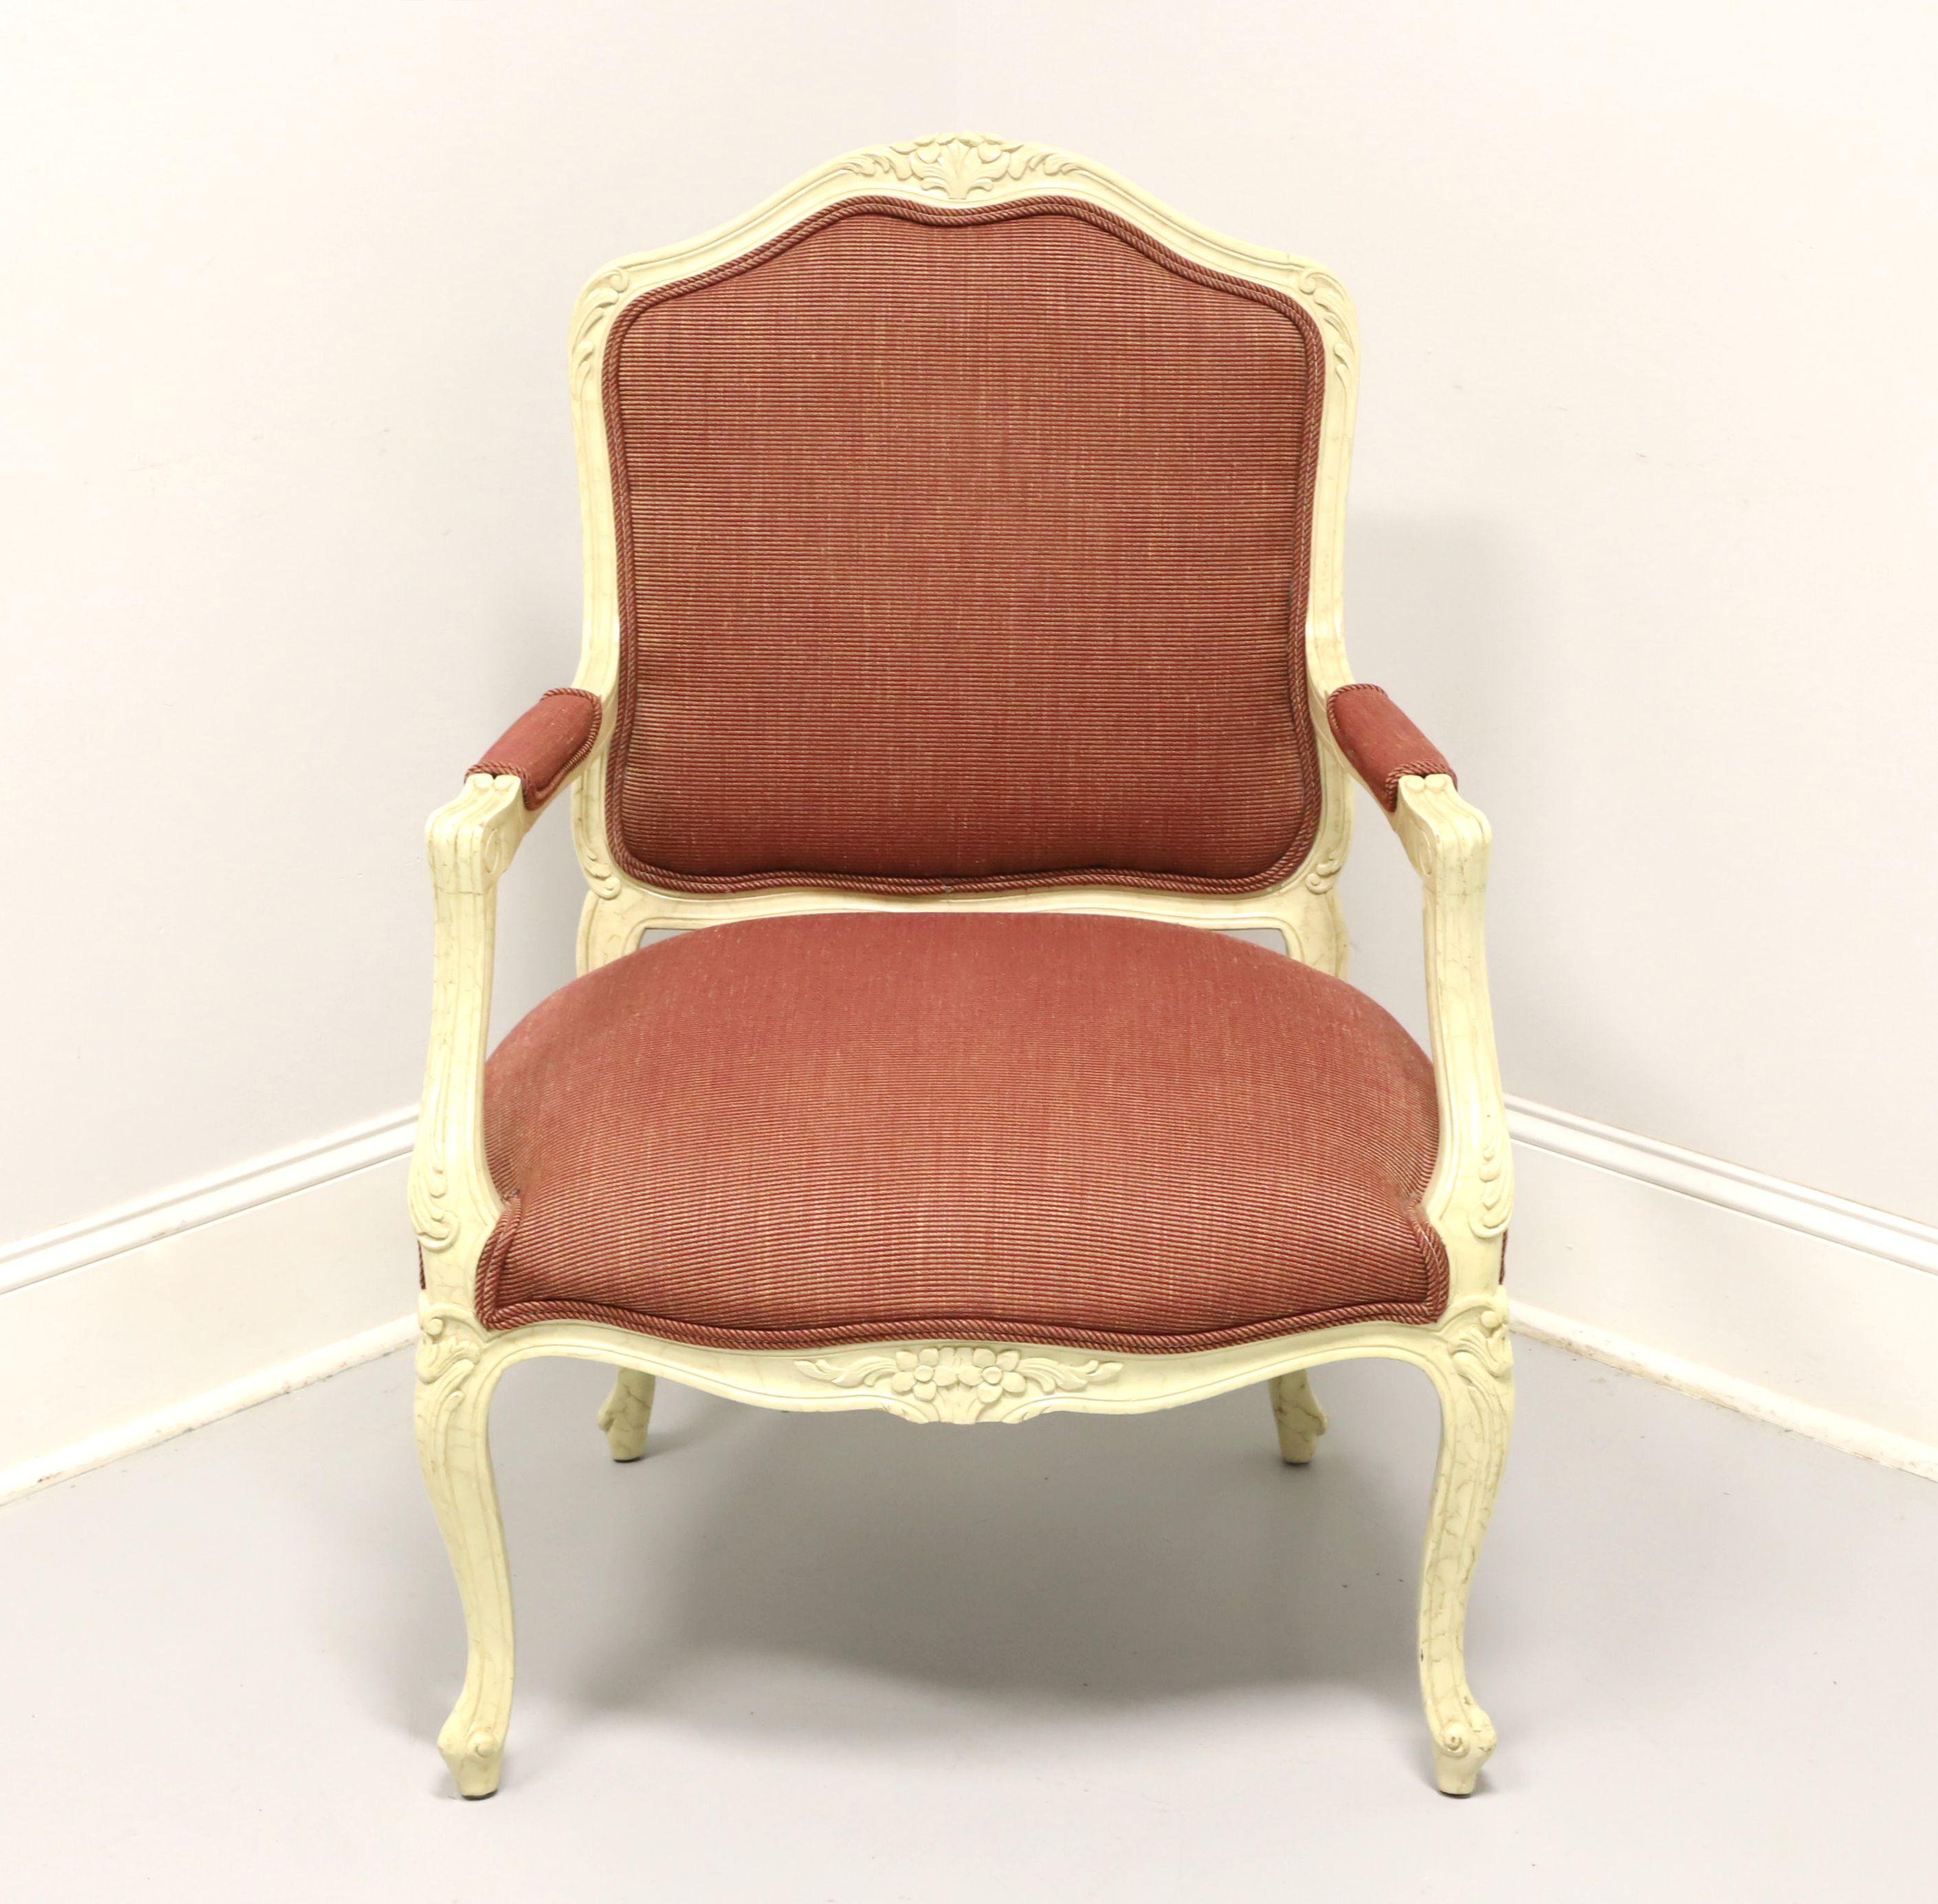 Ein französischer gepolsterter Sessel im Stil Louis XV, ohne Marke, ähnliche Qualität wie Drexel Heritage oder Hickory Chair. Gestell aus Hartholz, cremefarben marmoriert, Polsterung aus bordeauxfarbenem Stoff, teilweise gepolsterte Armlehnen mit